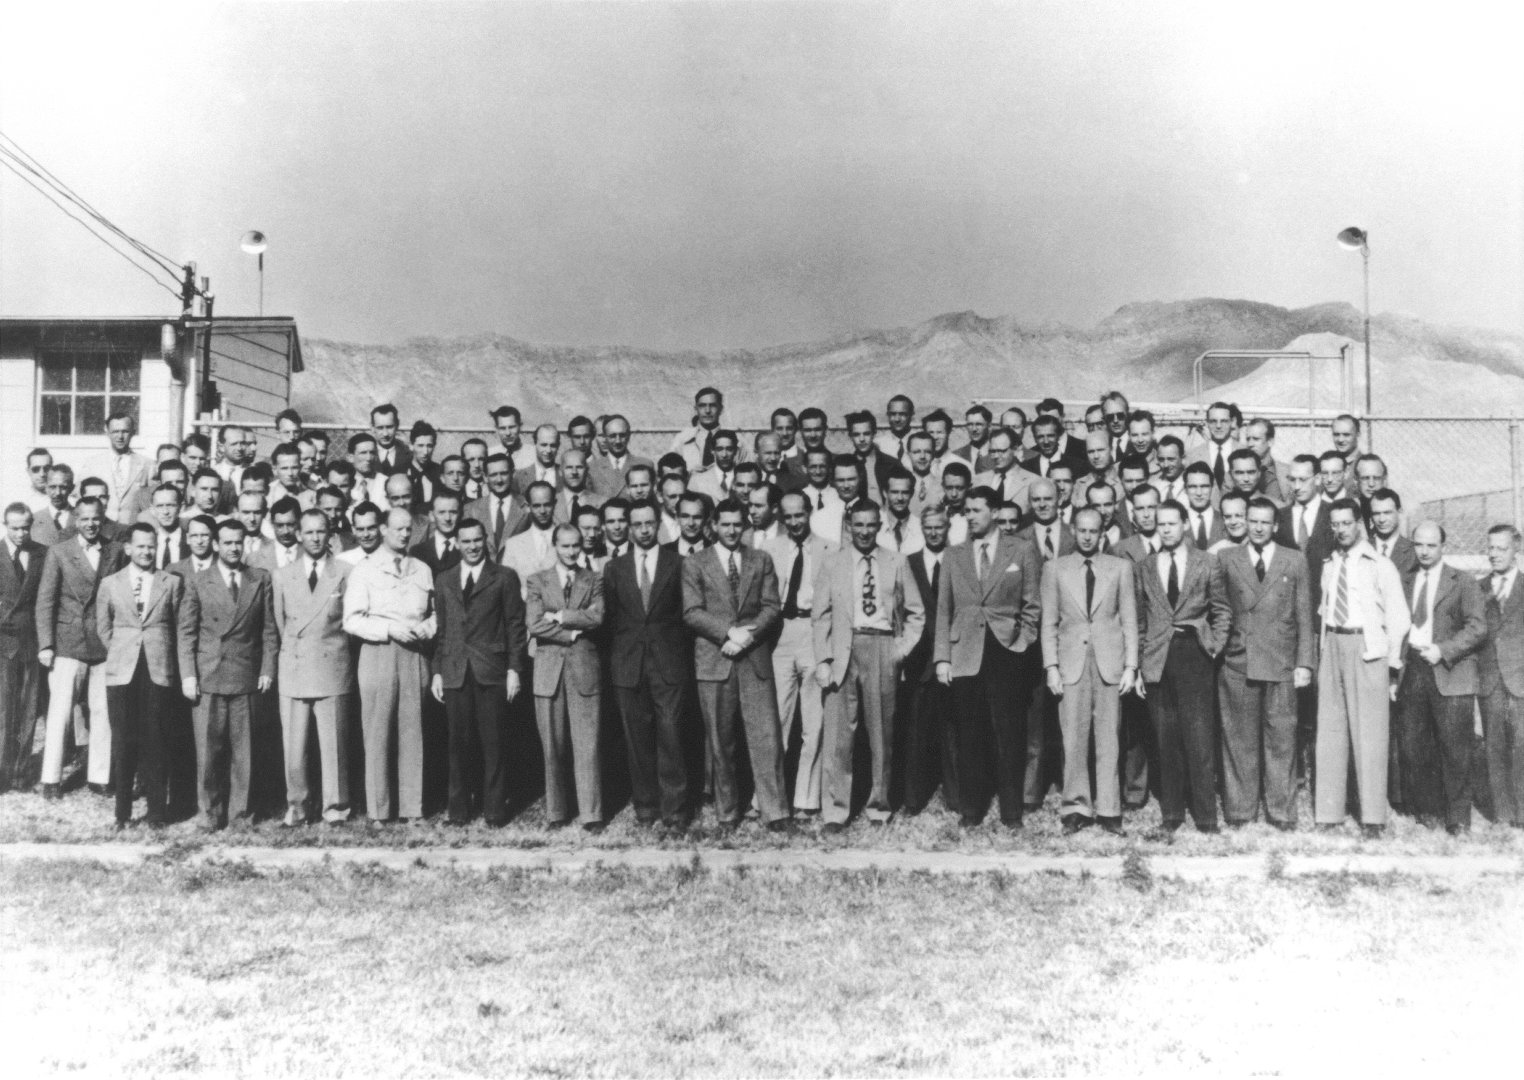 Operazione Paperclip - Wernher von Braun Rocket Team at Fort Bliss in March 1946